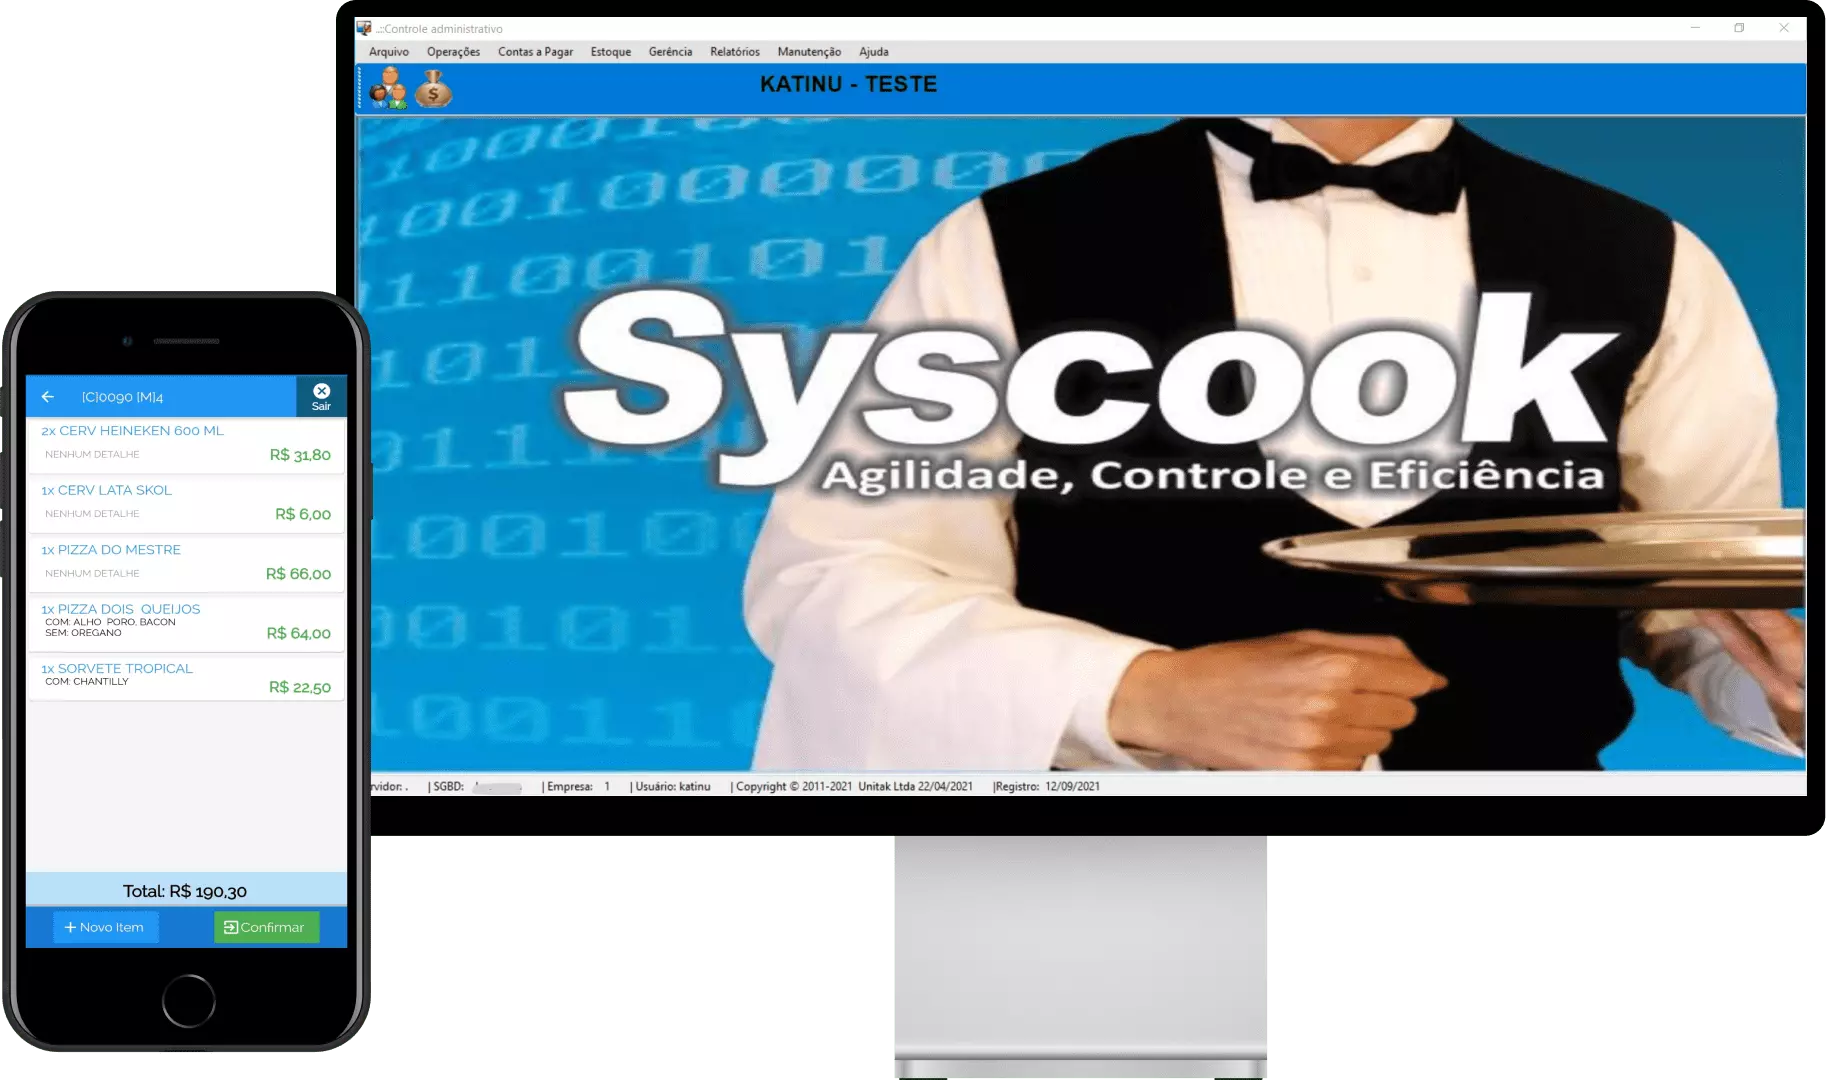 Syscook - Sistema gerencial para restaurantes, pizzaria e todos os tipos de comércio do ramo alimentício.